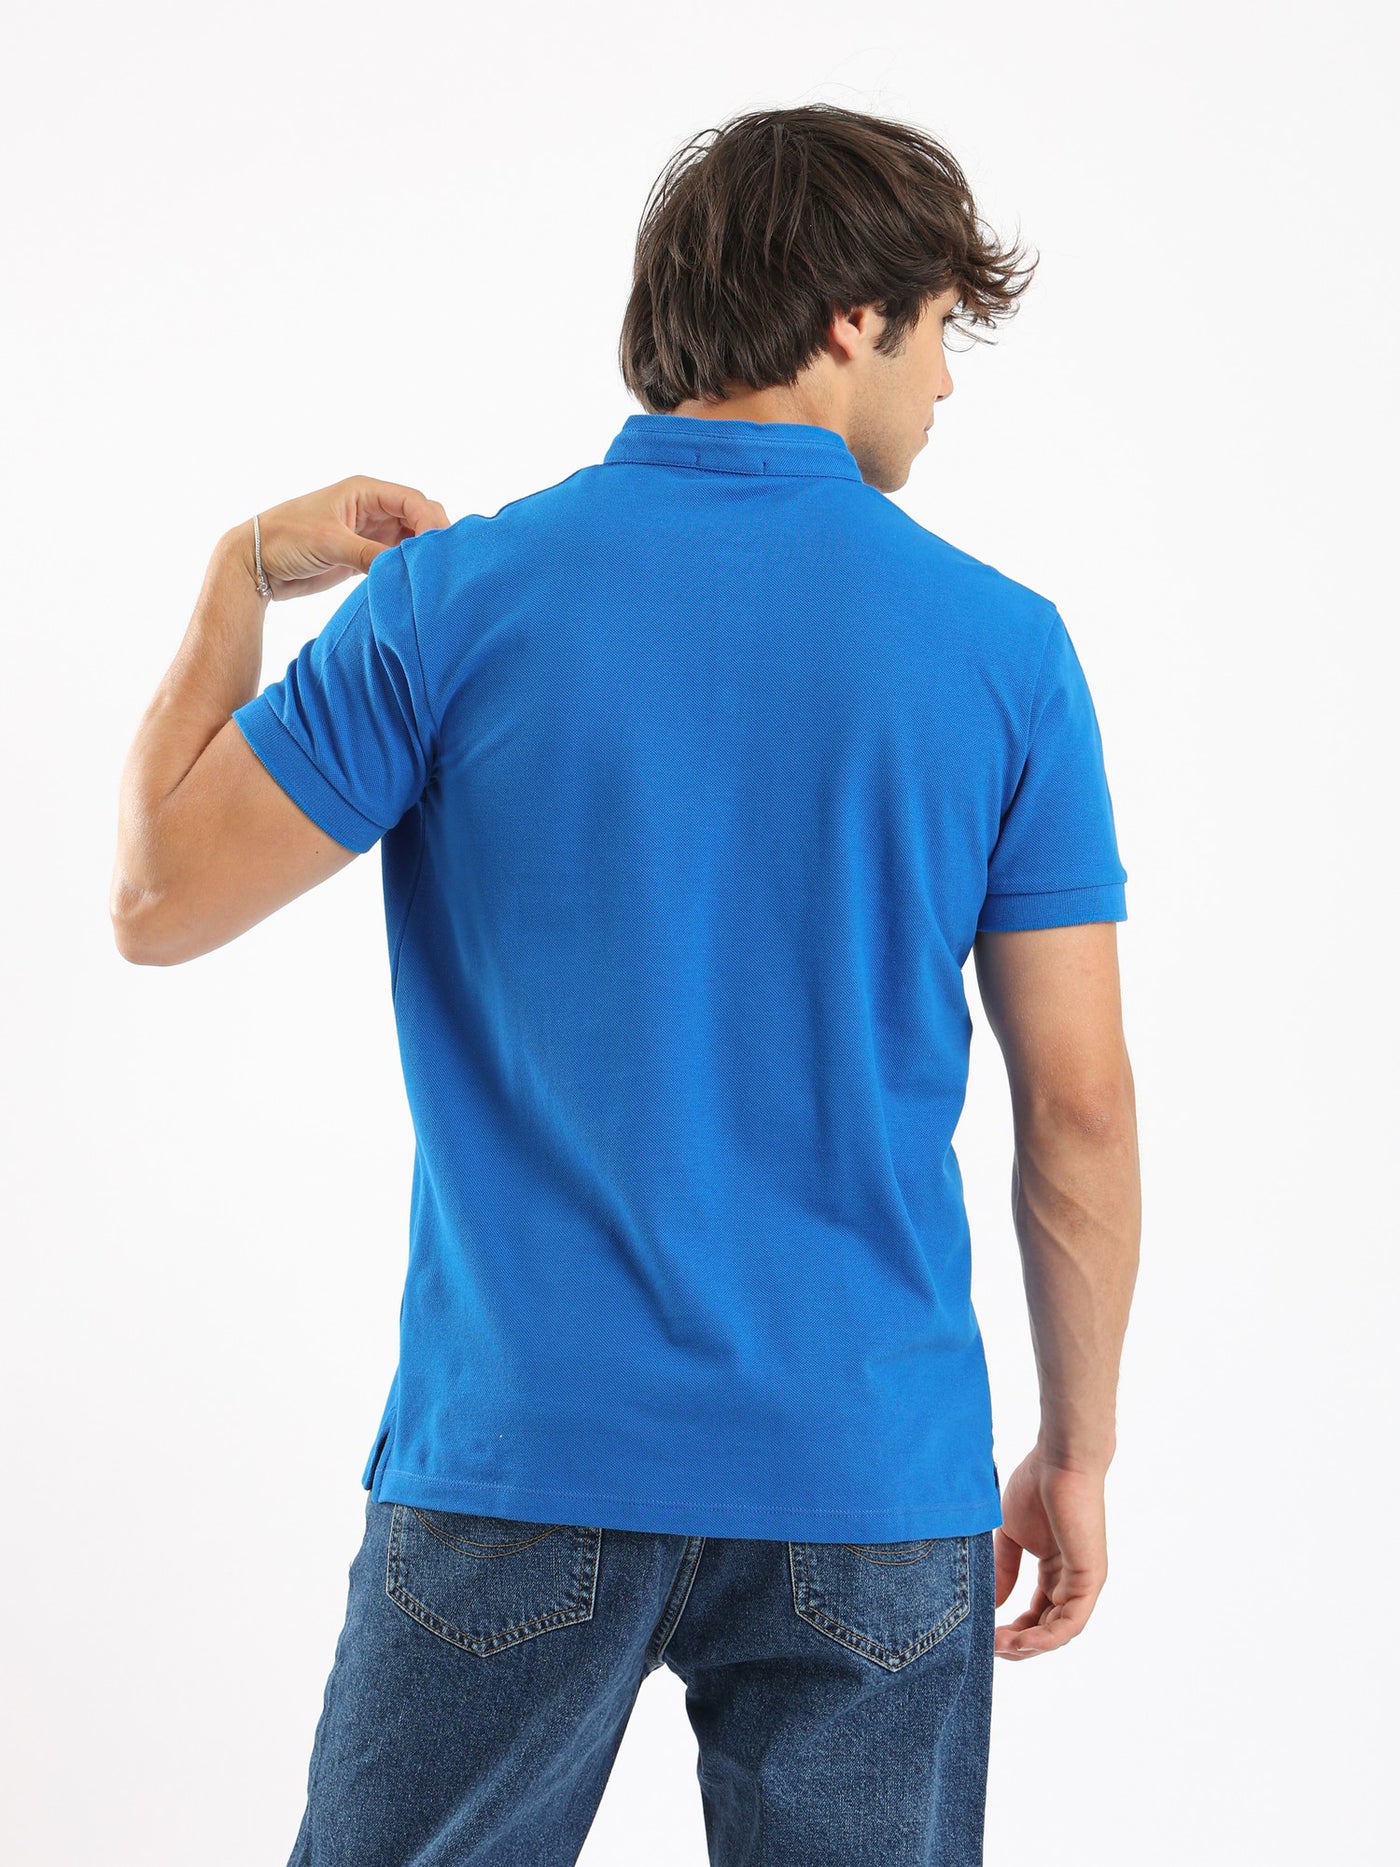 Polo Shirt - Mandarin Neck - Buttoned